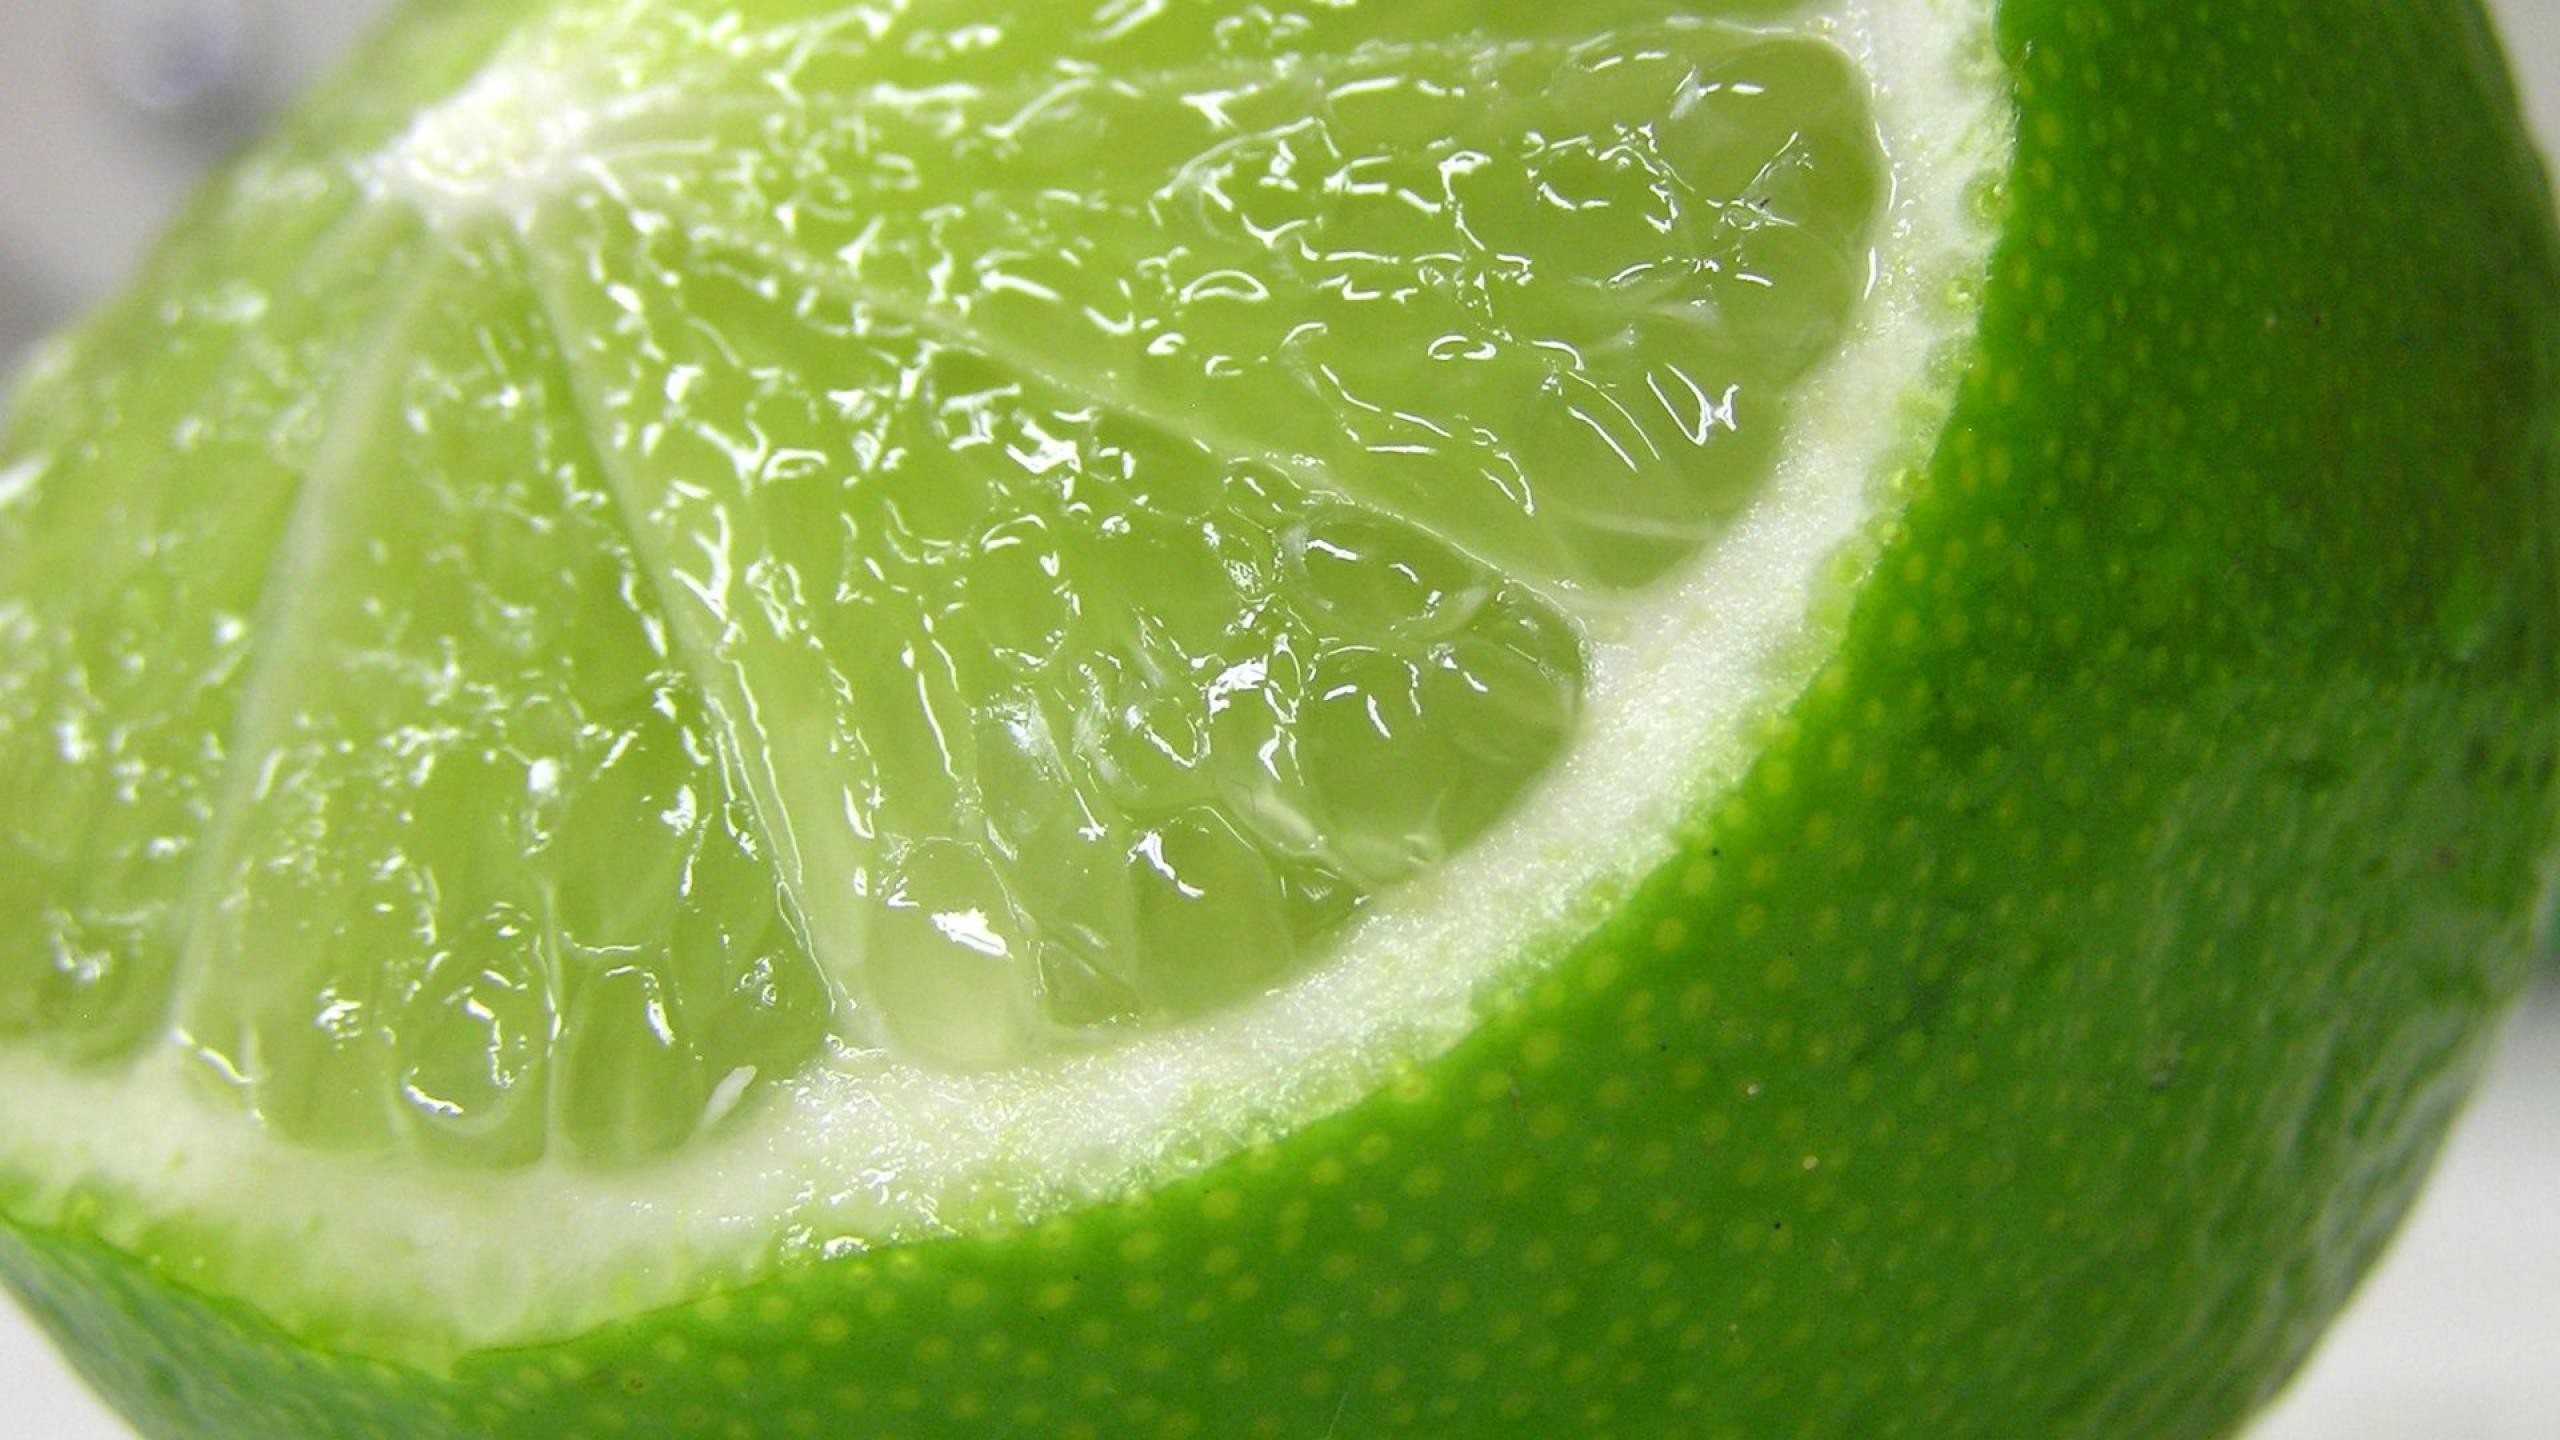 General 2560x1440 lime fruit macro food